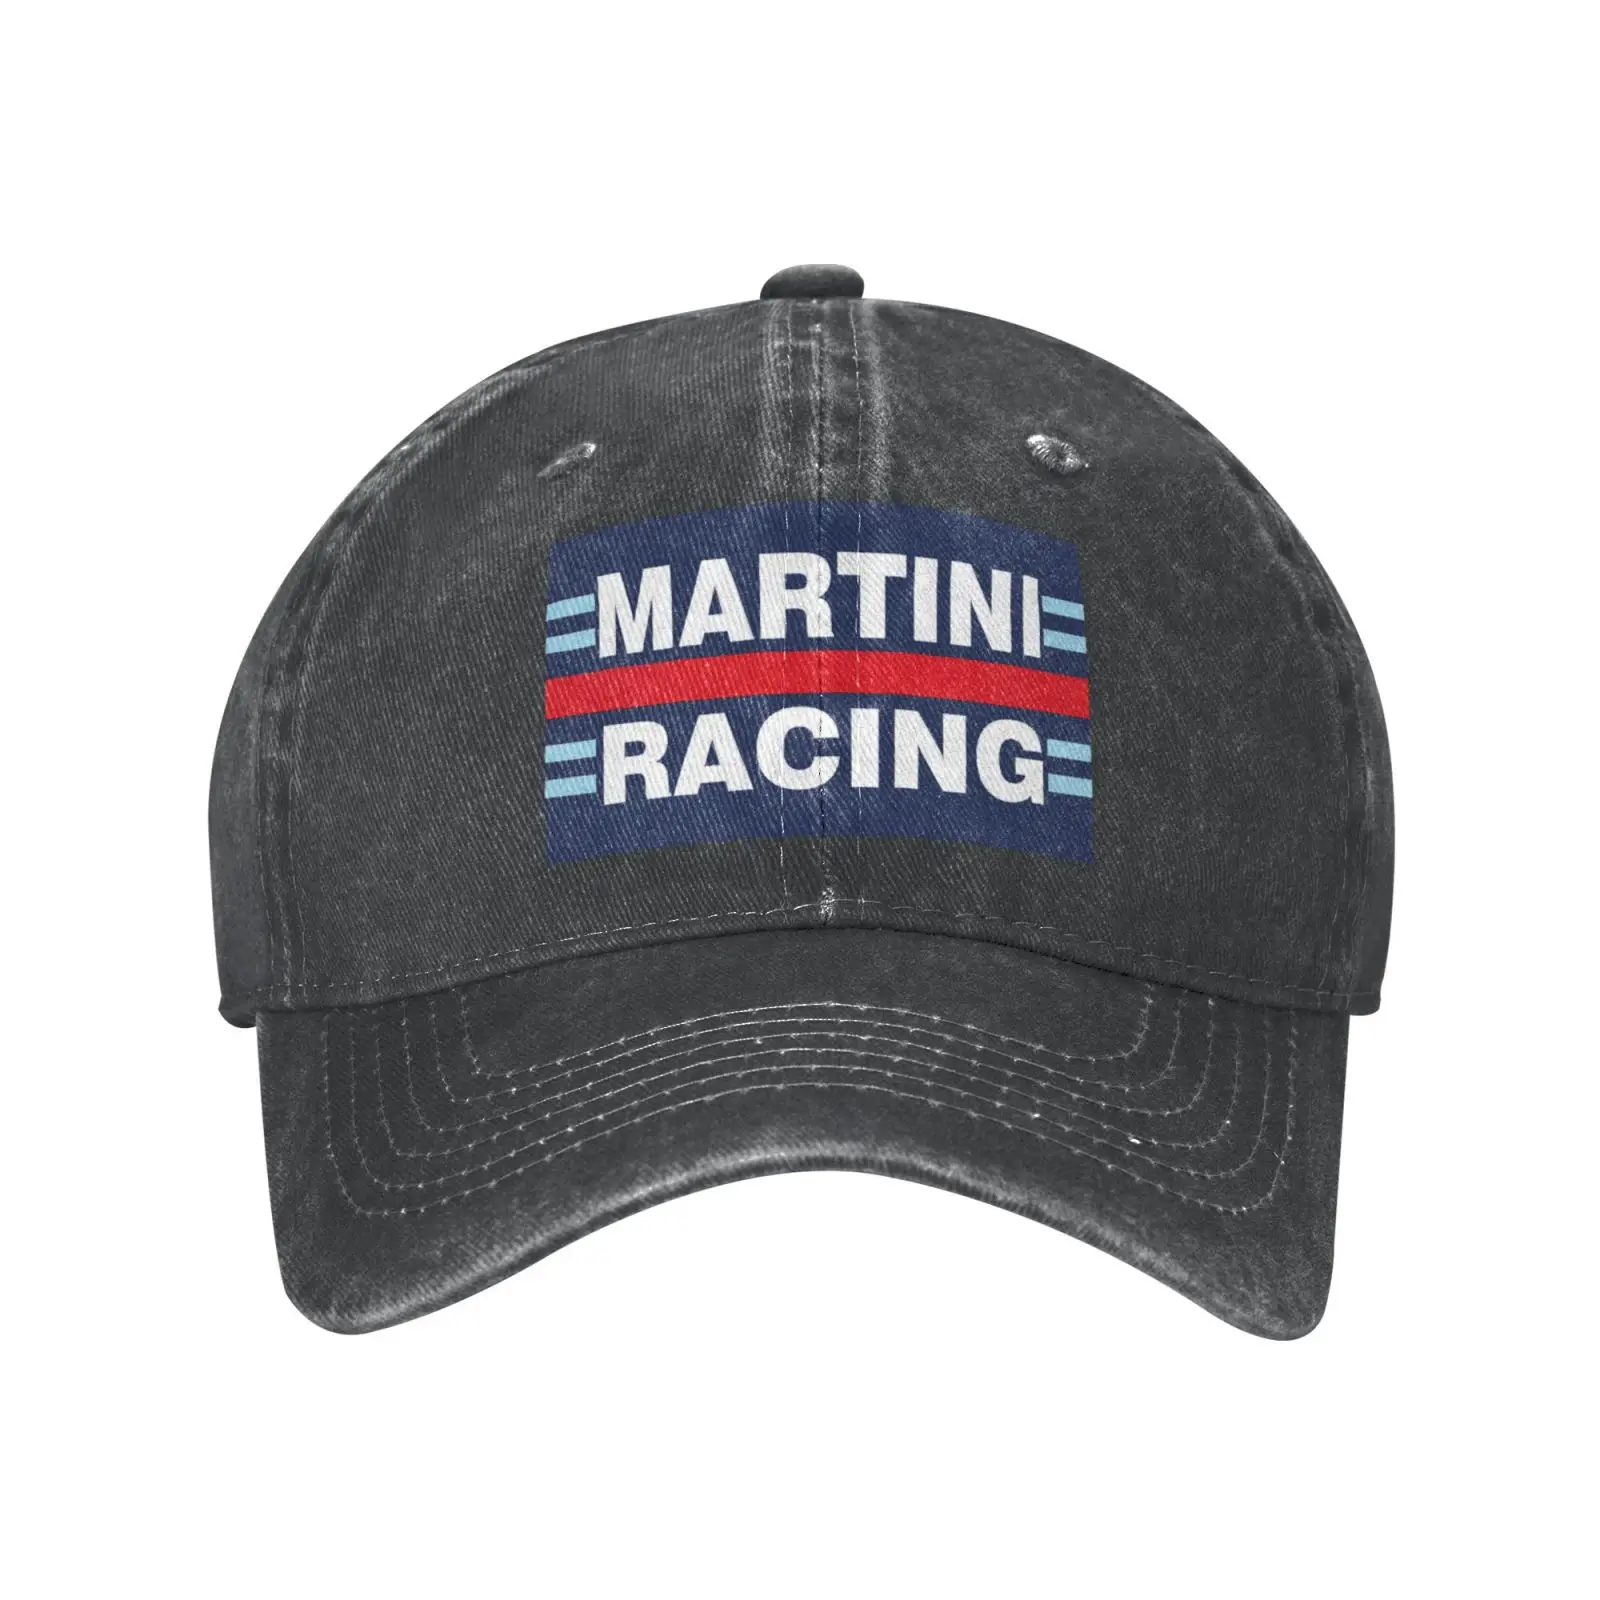 

Бейсболка Martini Racing Or Gray Lancia для мужчин и женщин, мужская шапка, шапка, мужские шапочки, вязаная Балаклава, шапки в стиле хип-хоп, кепка для мужч...